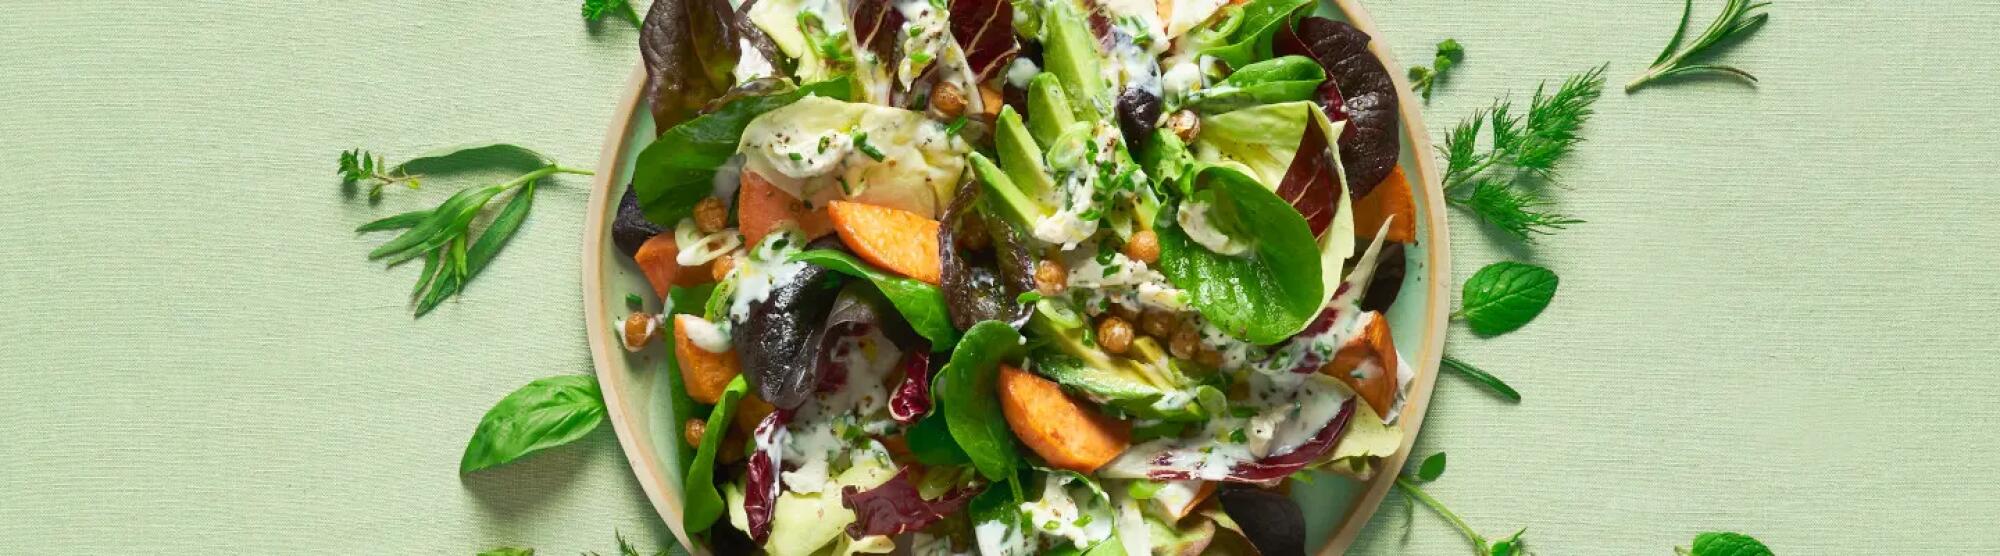 Recette : Salade garnie, tartinade végétale et croustillants de pois chiche